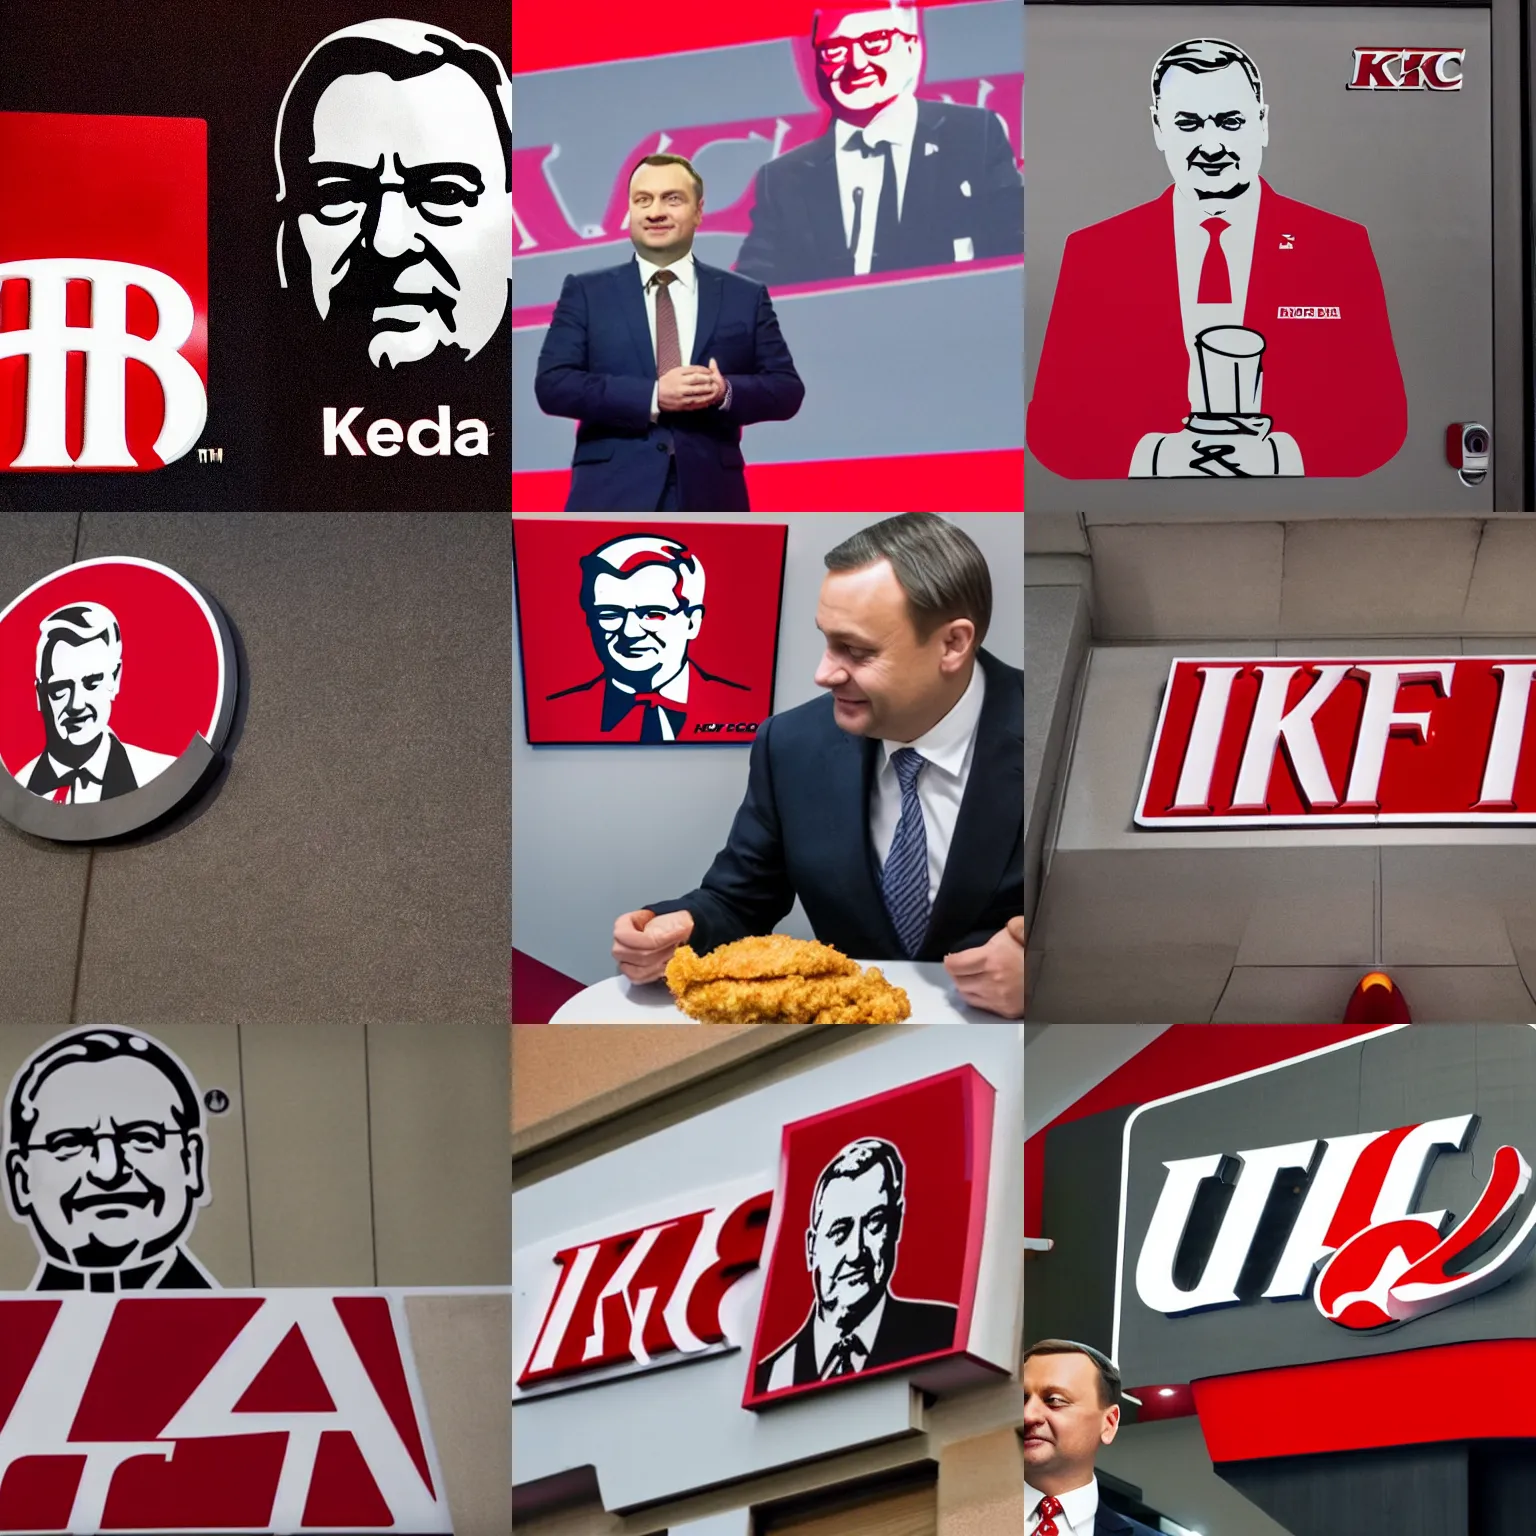 Prompt: KFC logo with Andrzej Duda